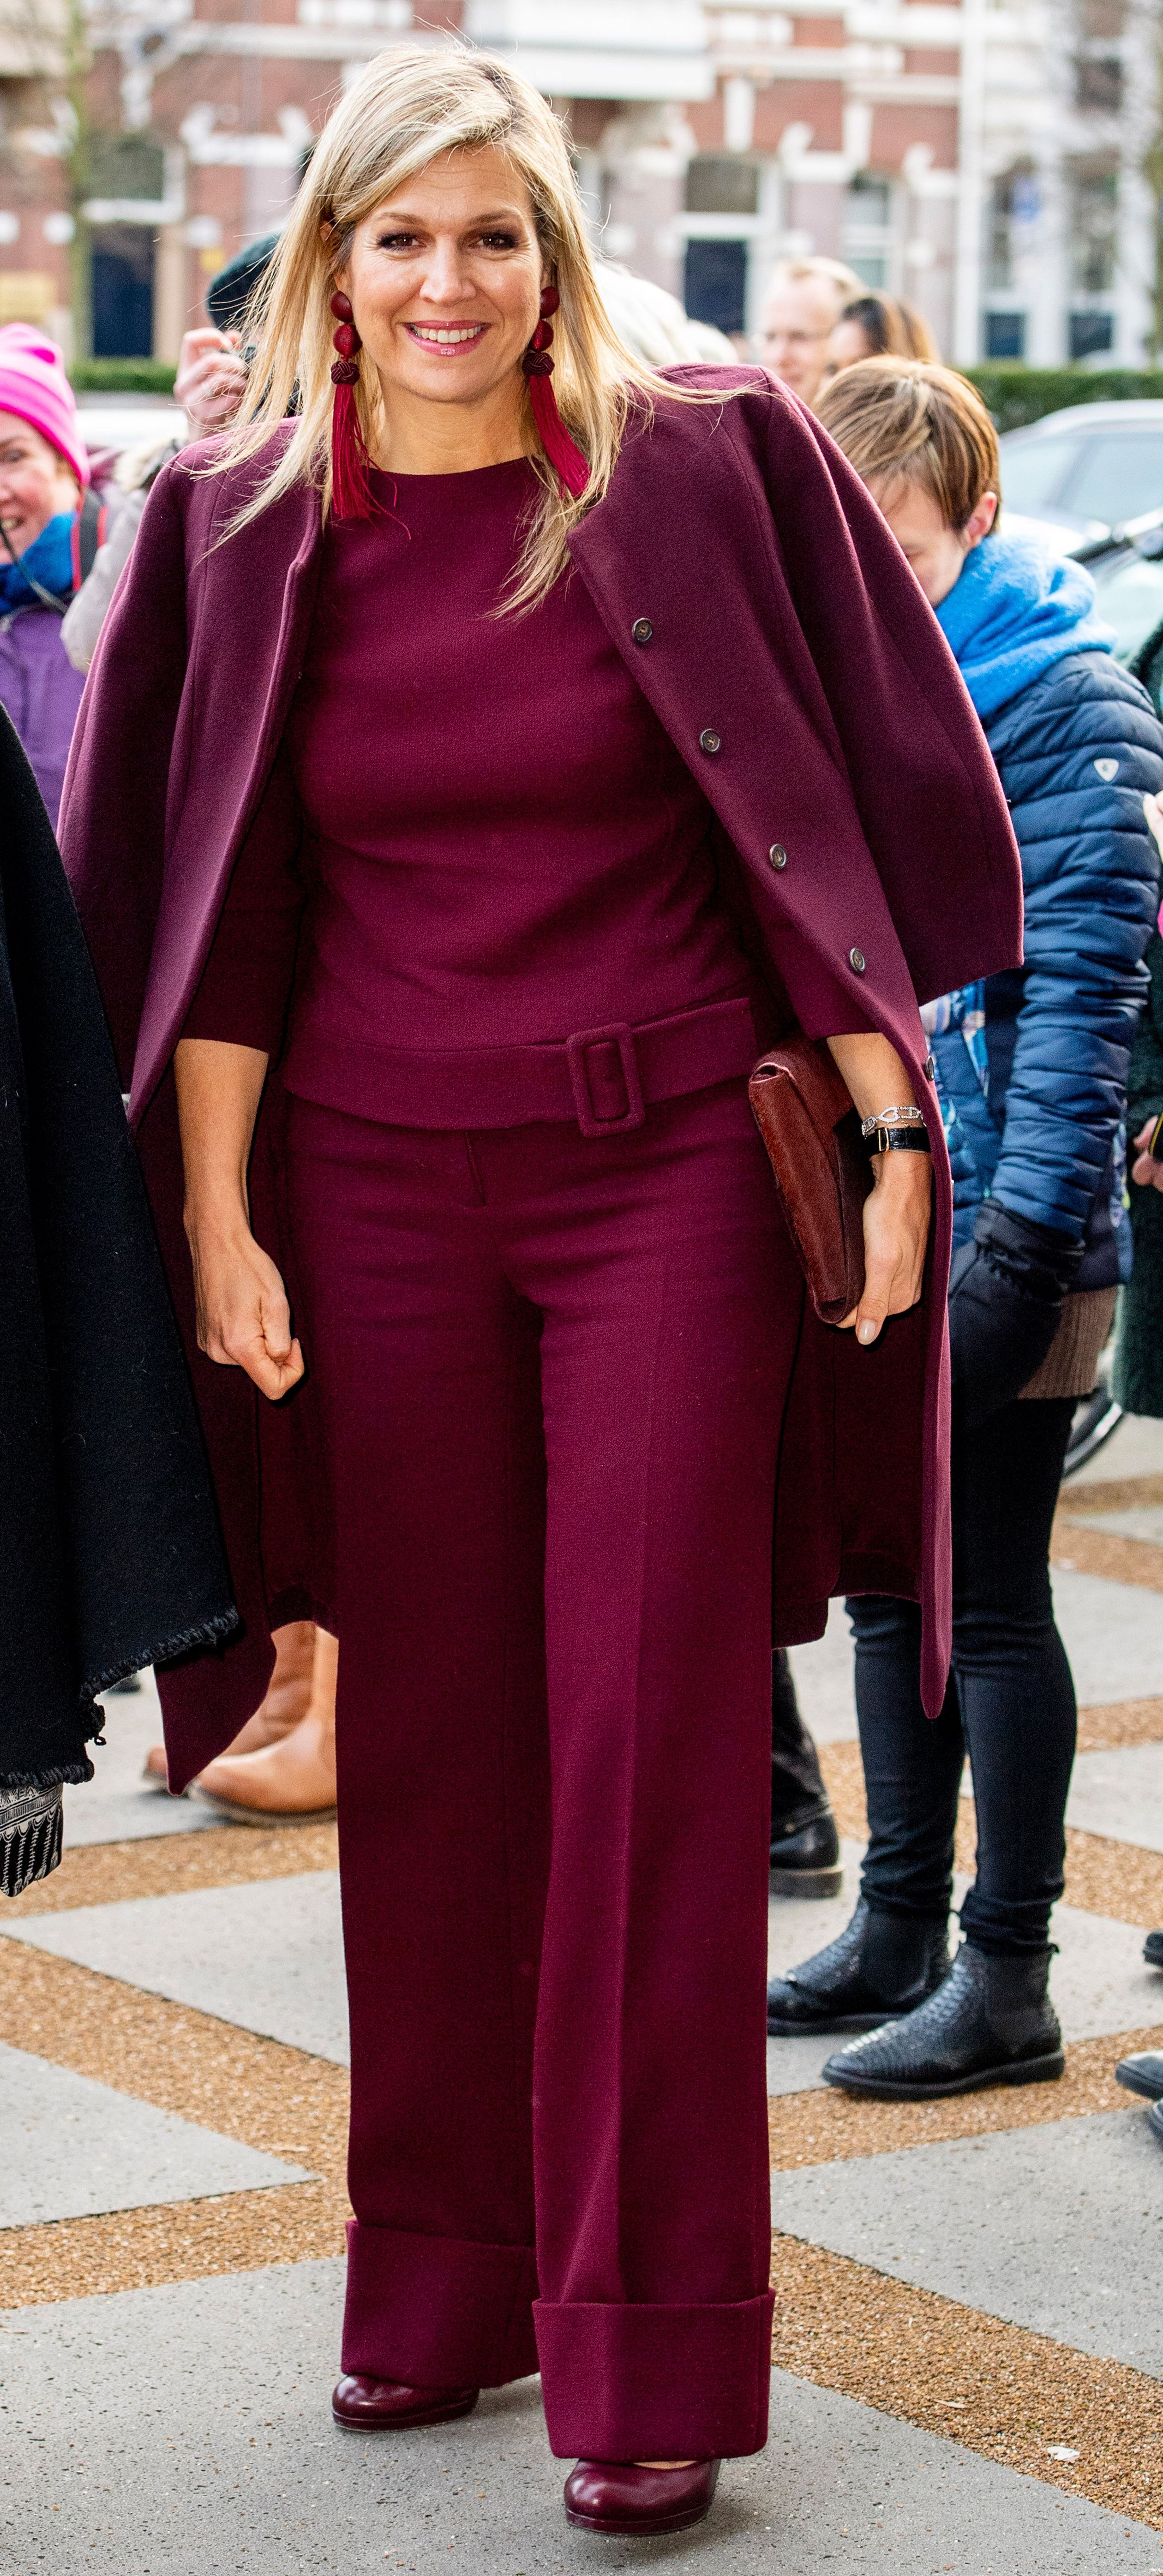 Op dinsdag 29 januari trekt Máxima een nieuwe outfit uit haar kledingkast: een auberginekleurig